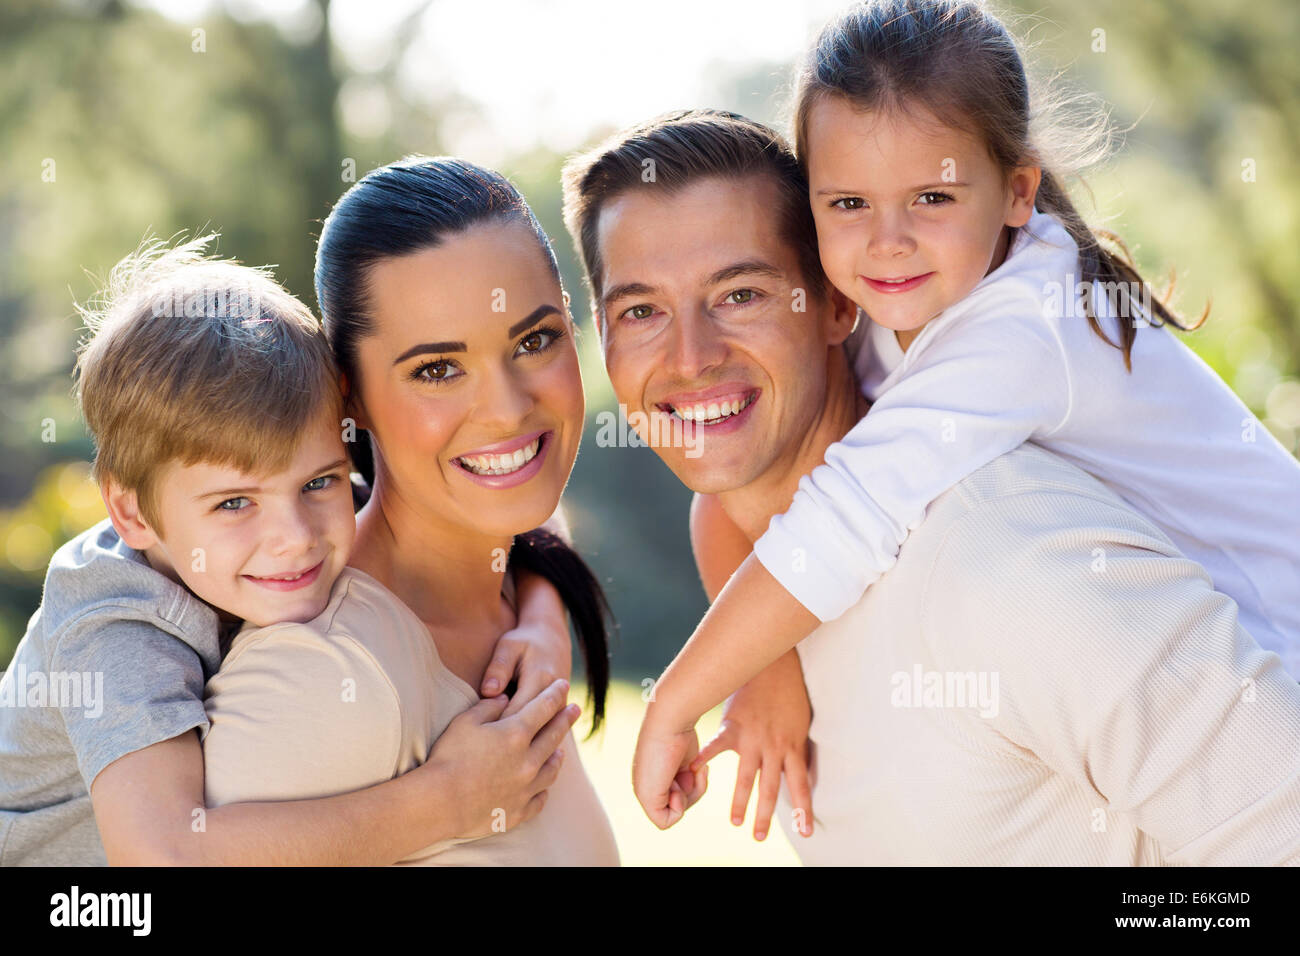 Porträt der schönen jungen Familie zusammen im freien Stockfoto